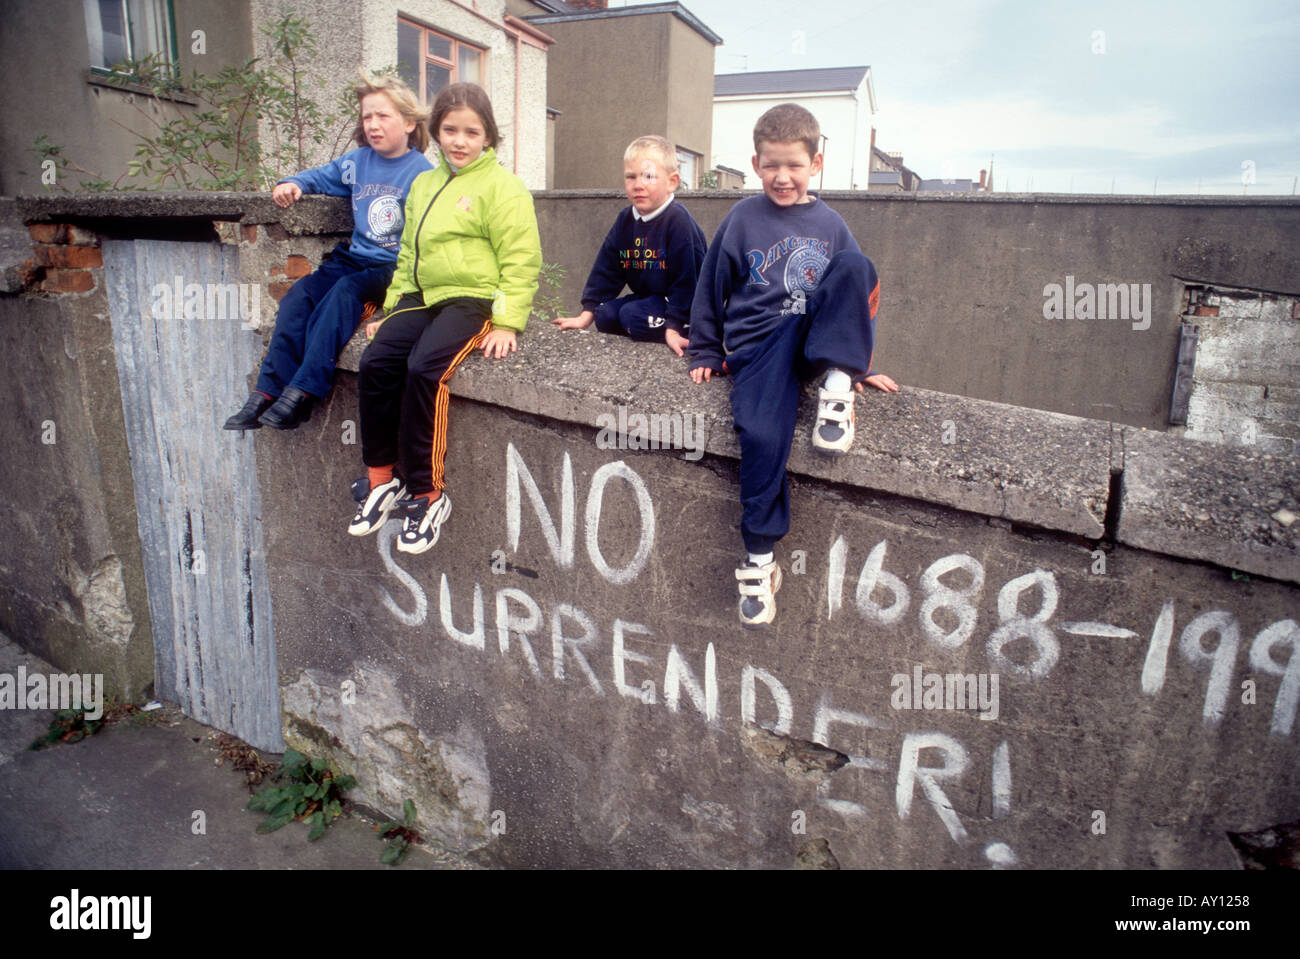 De vrais enfants locaux avec le message de l'IRA à Derry, Irlande du Nord Londonderry Royaume-Uni tué avec aucun signe peint de reddition sur le mur Banque D'Images